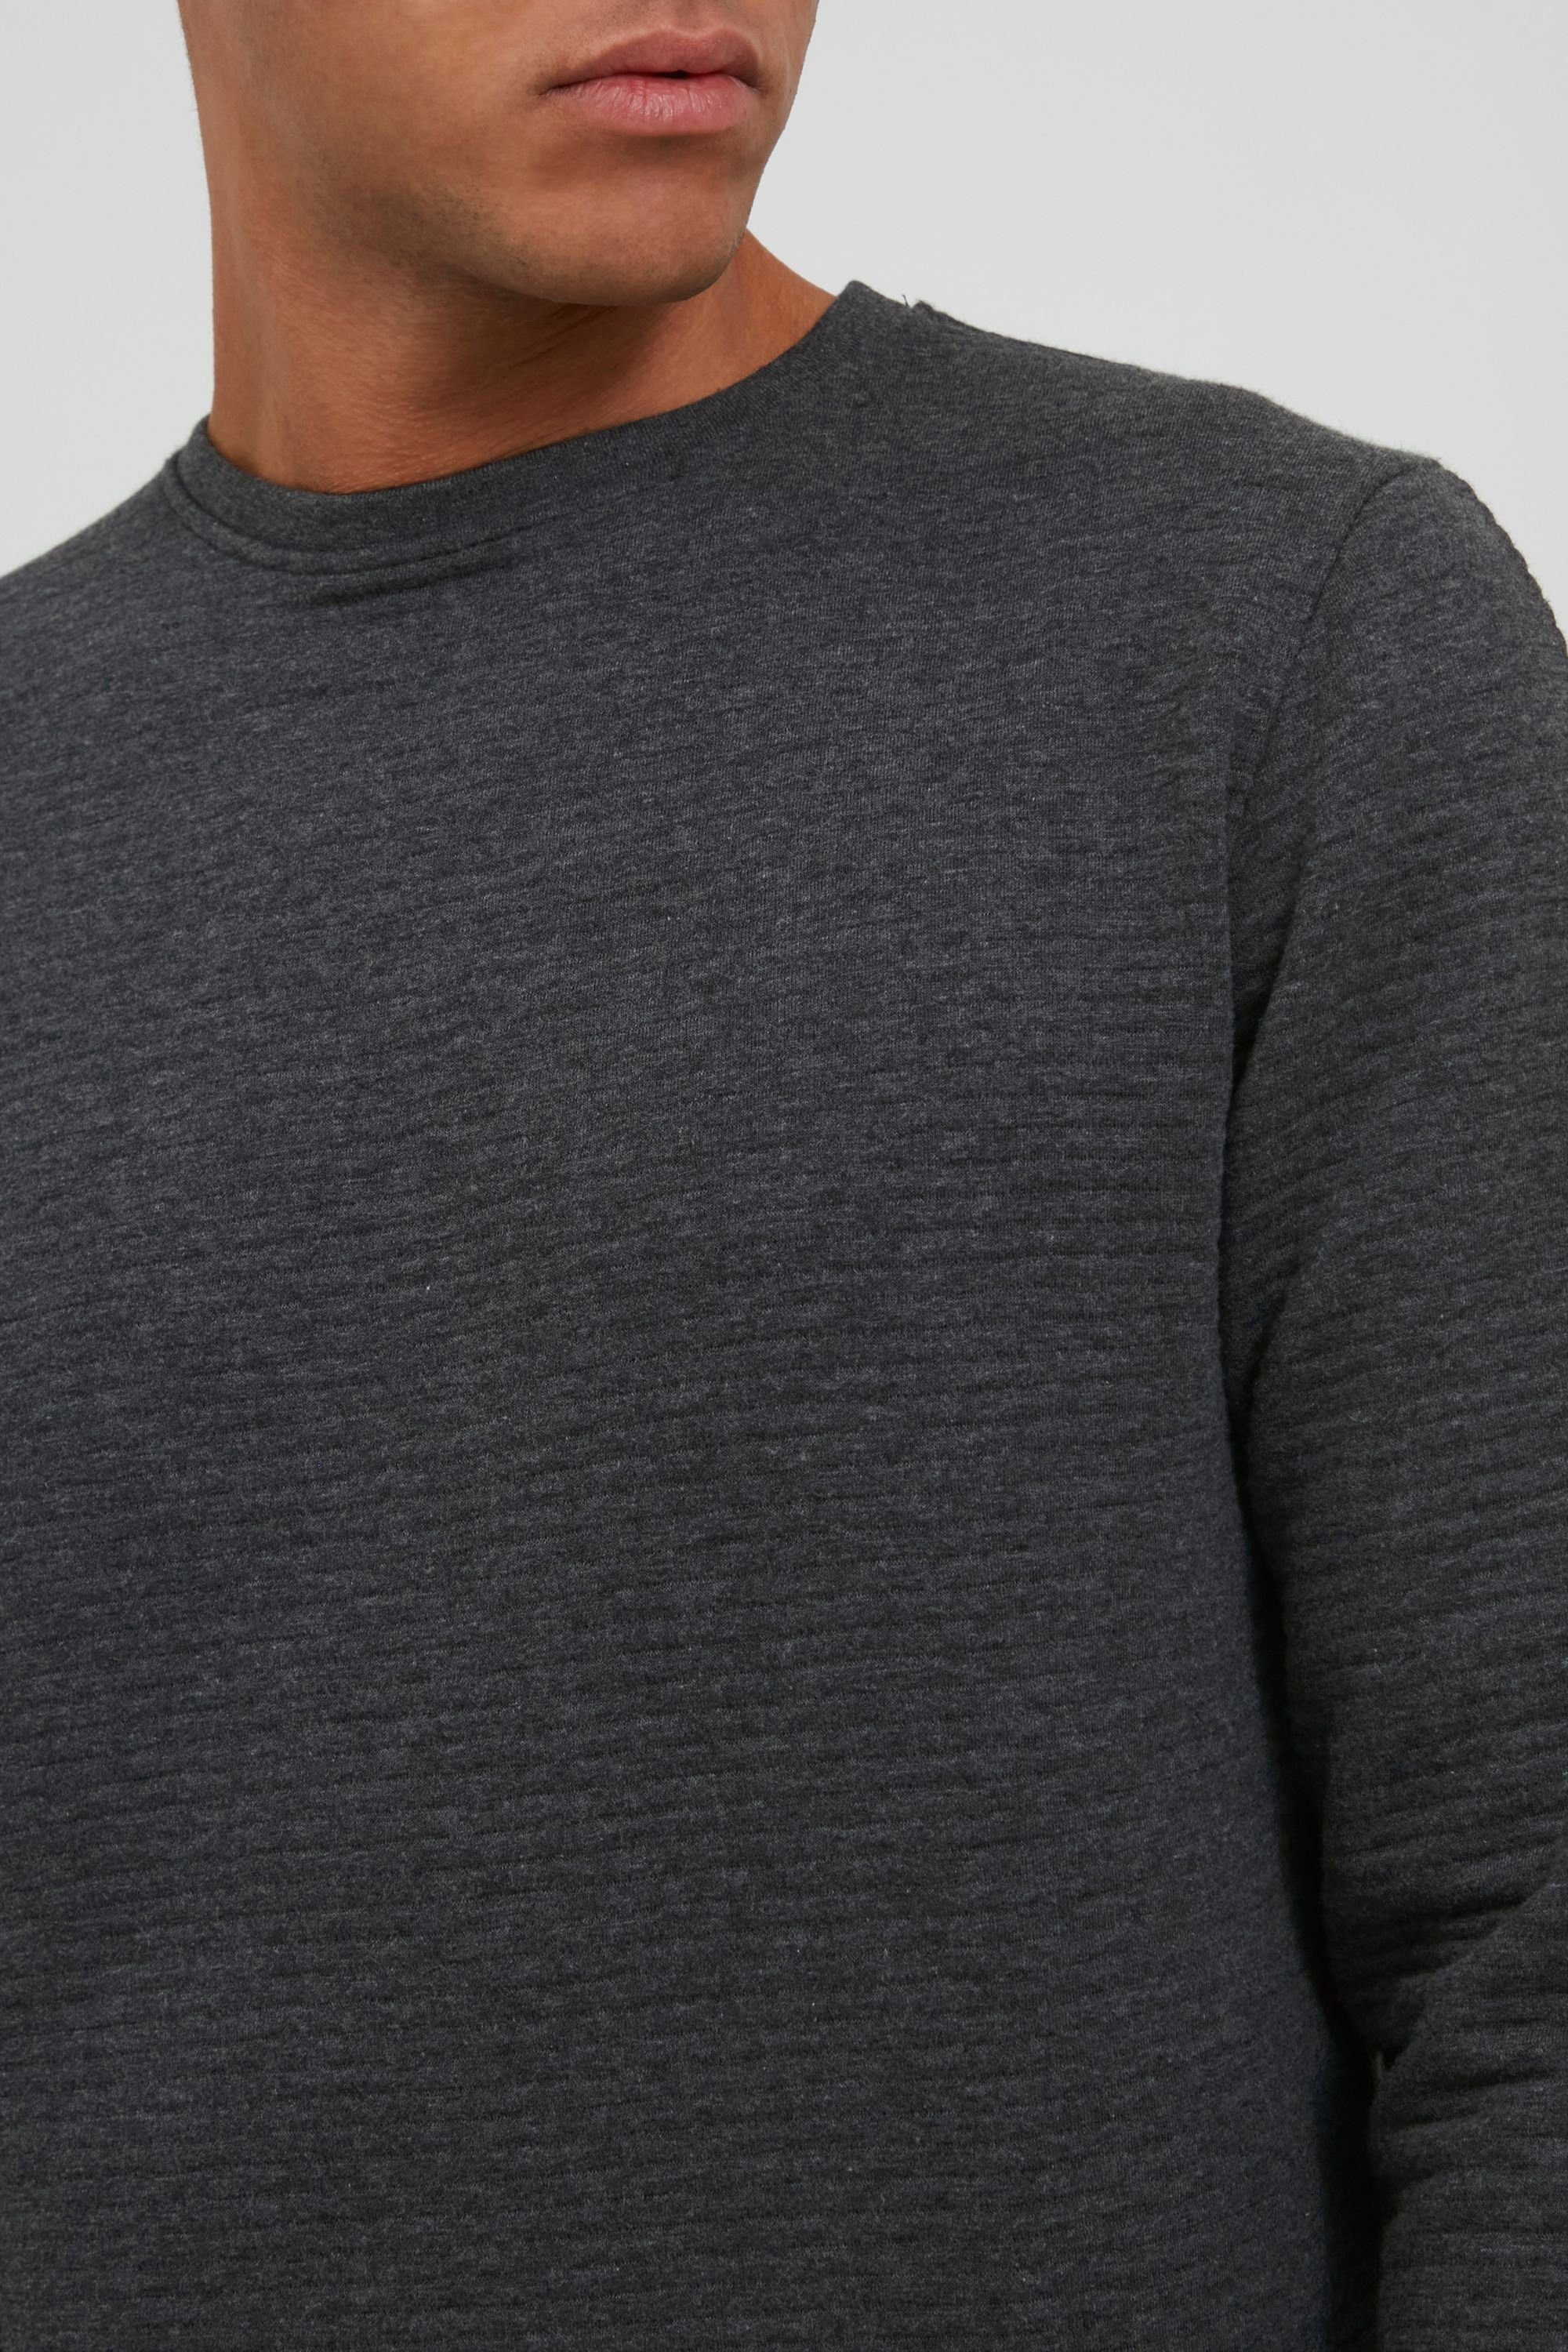 Sweatshirt Mix Indicode Charcoal (915) IDBronn Sweatpulli